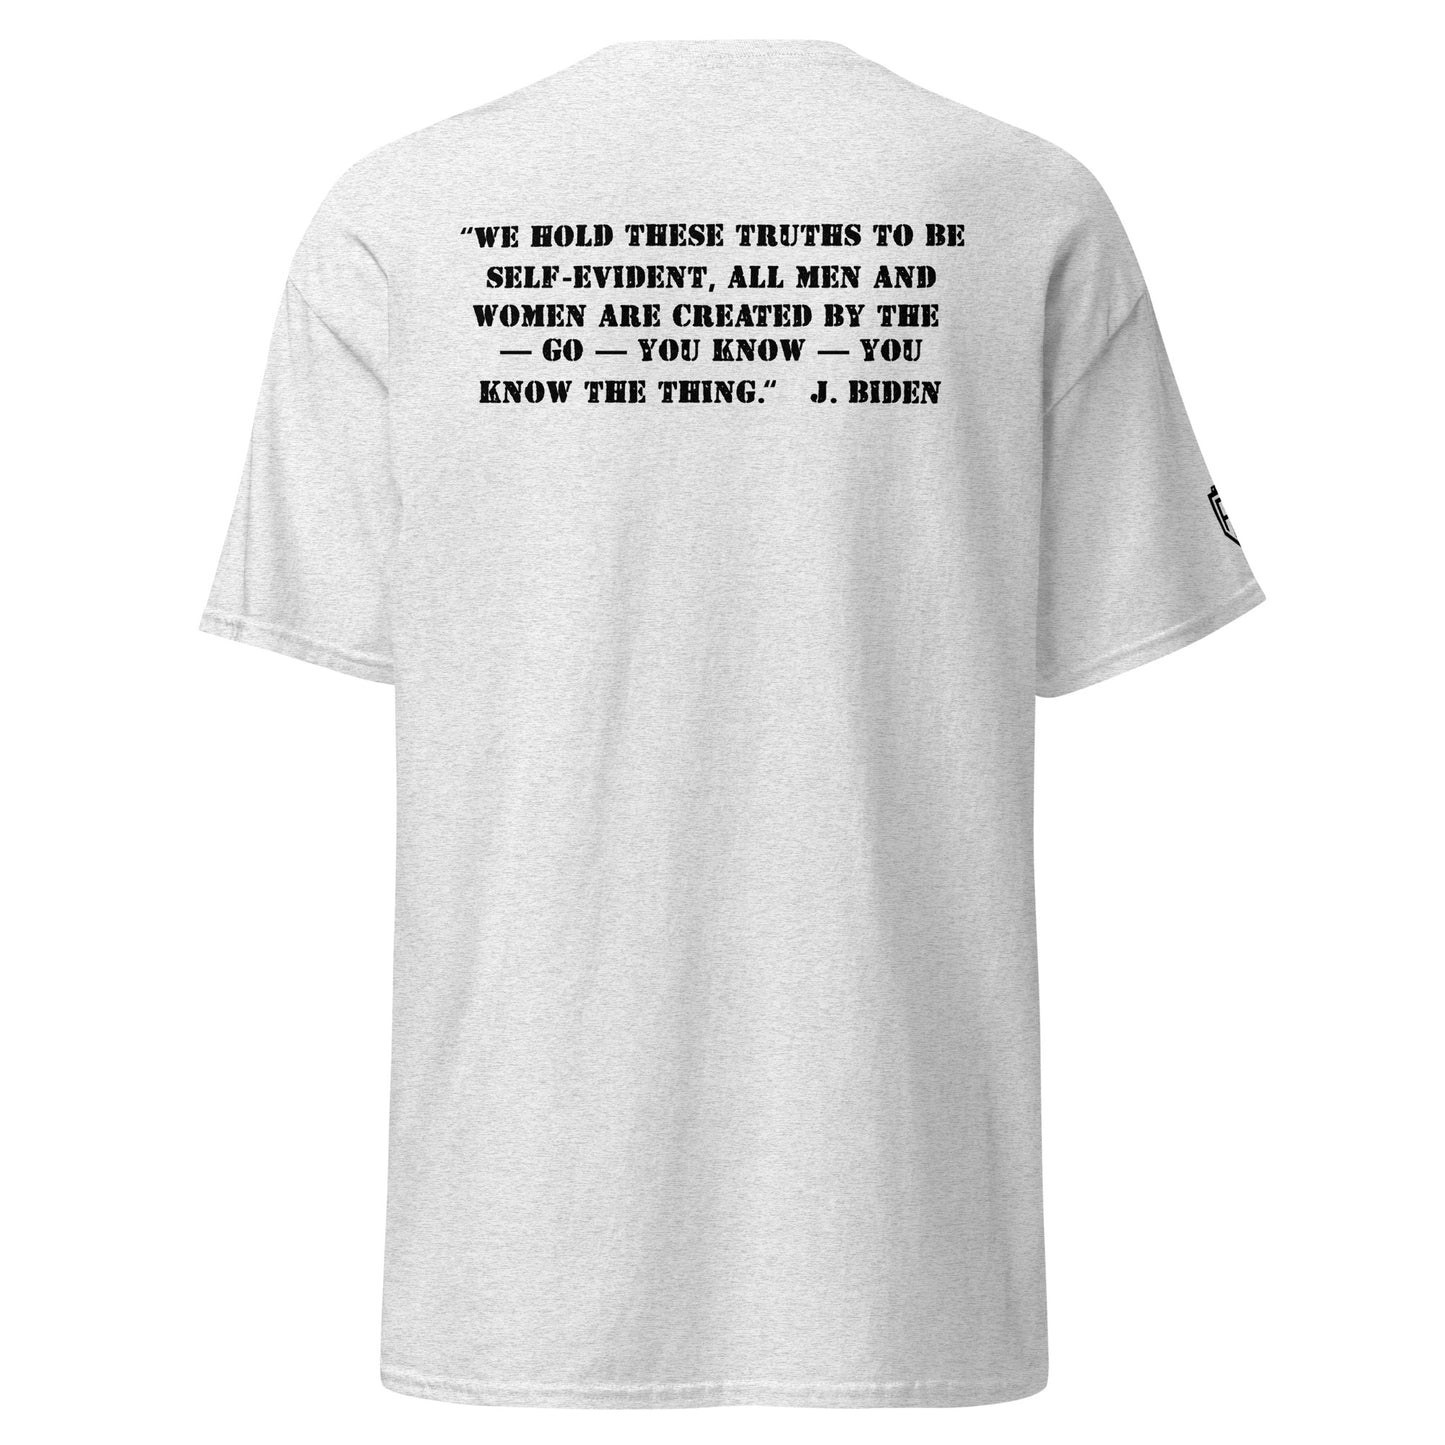 "White Retirement Home" T-Shirt